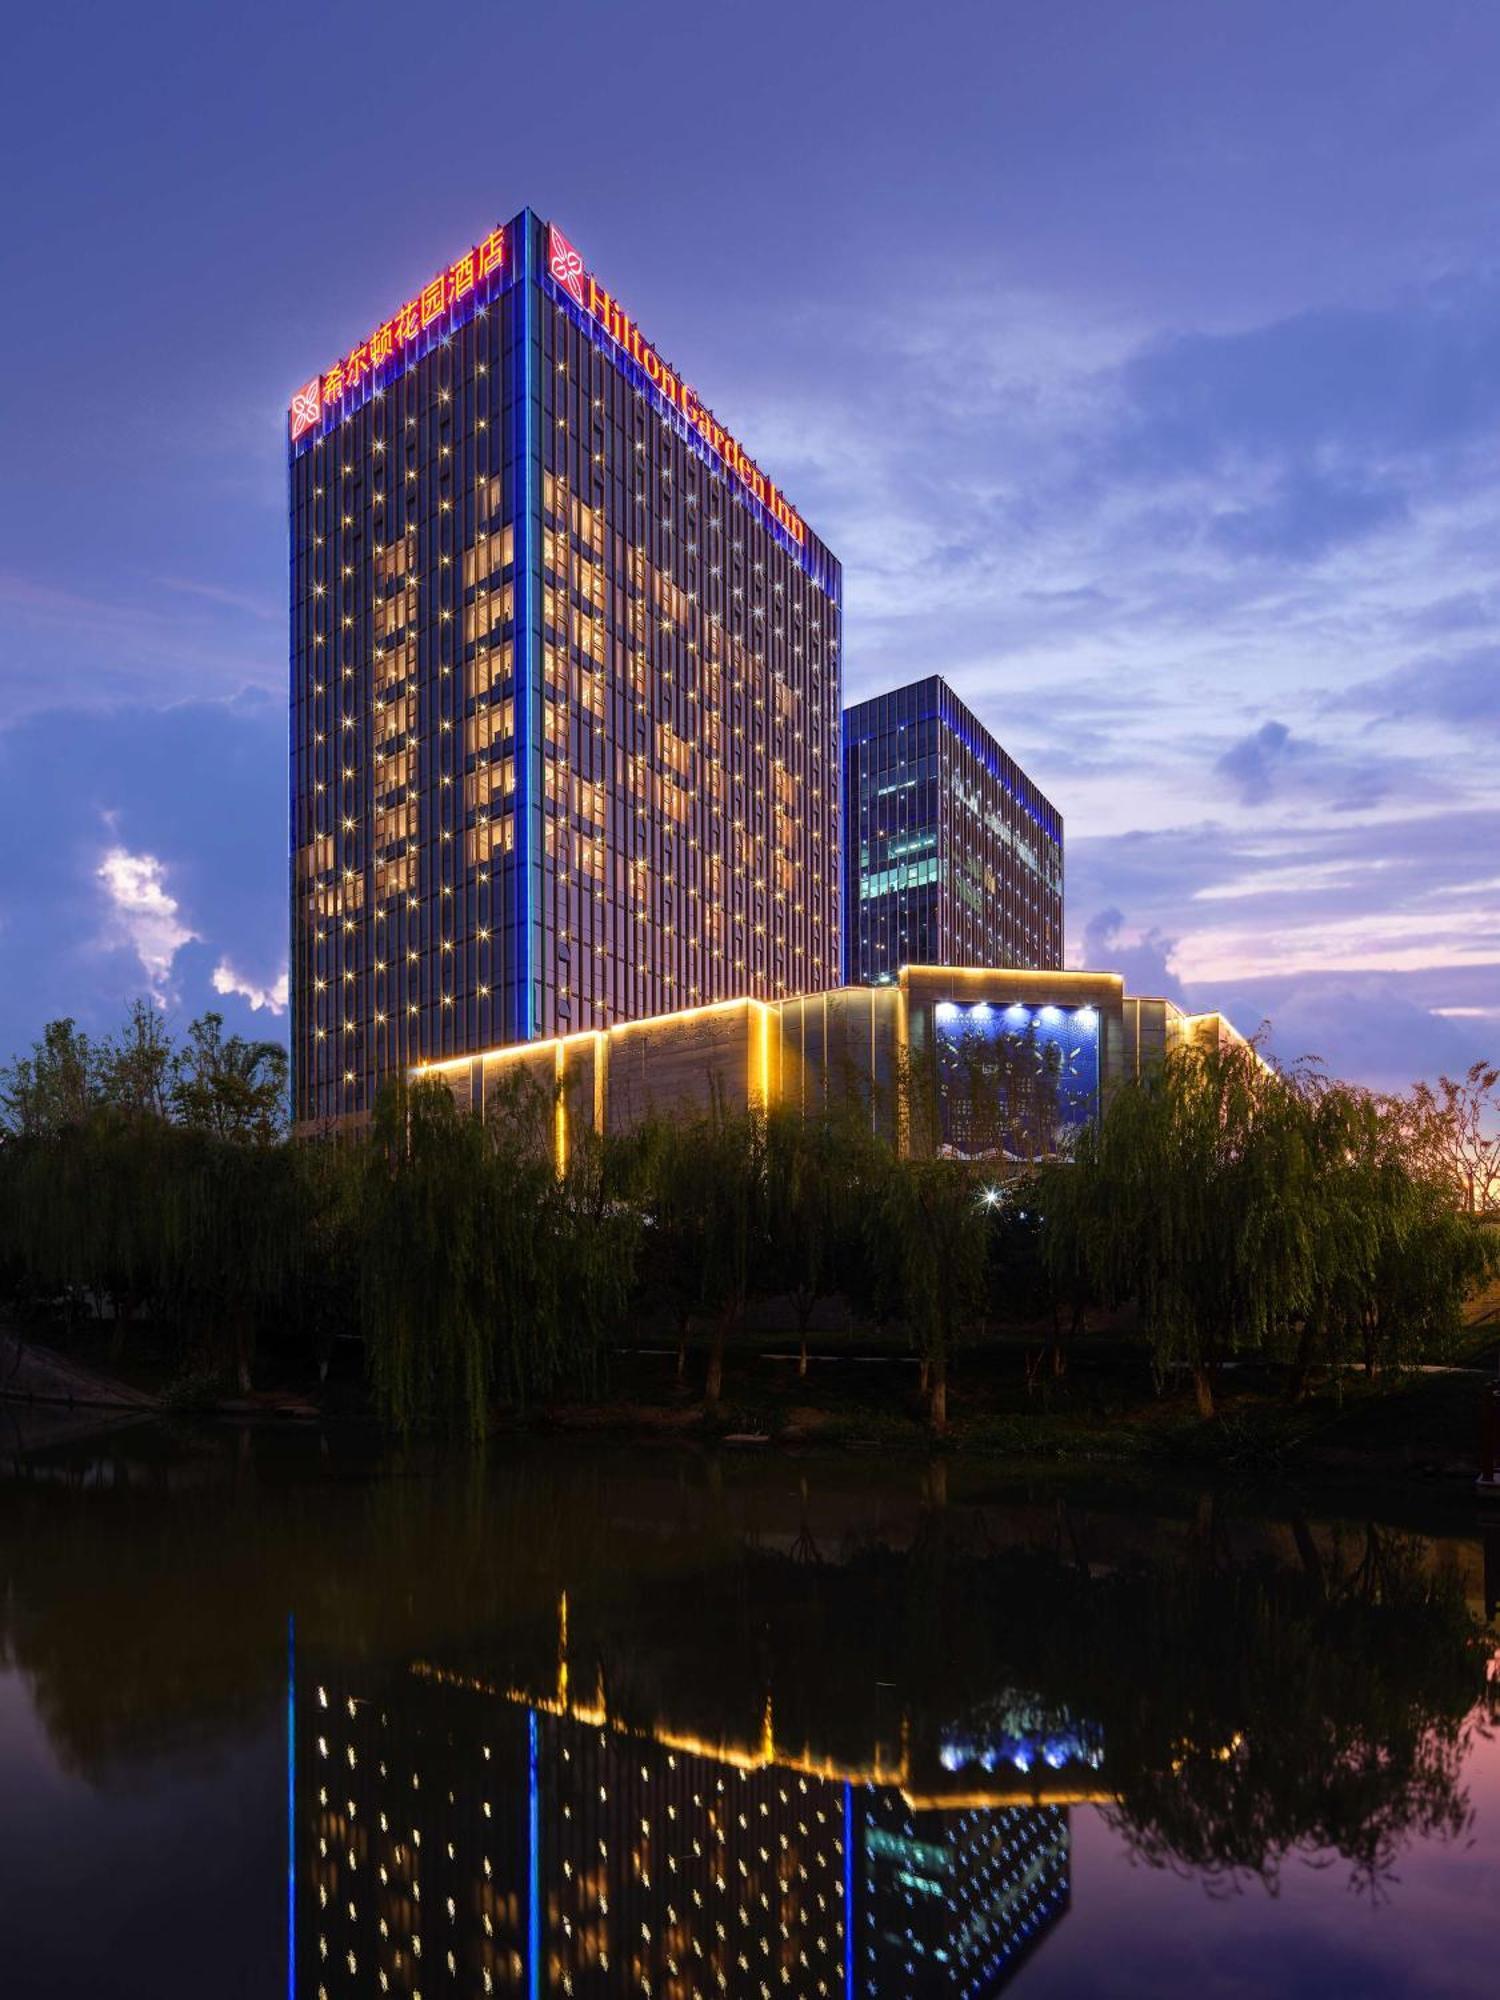 Hilton Garden Inn Hangzhou Xixi Zijingang Luaran gambar